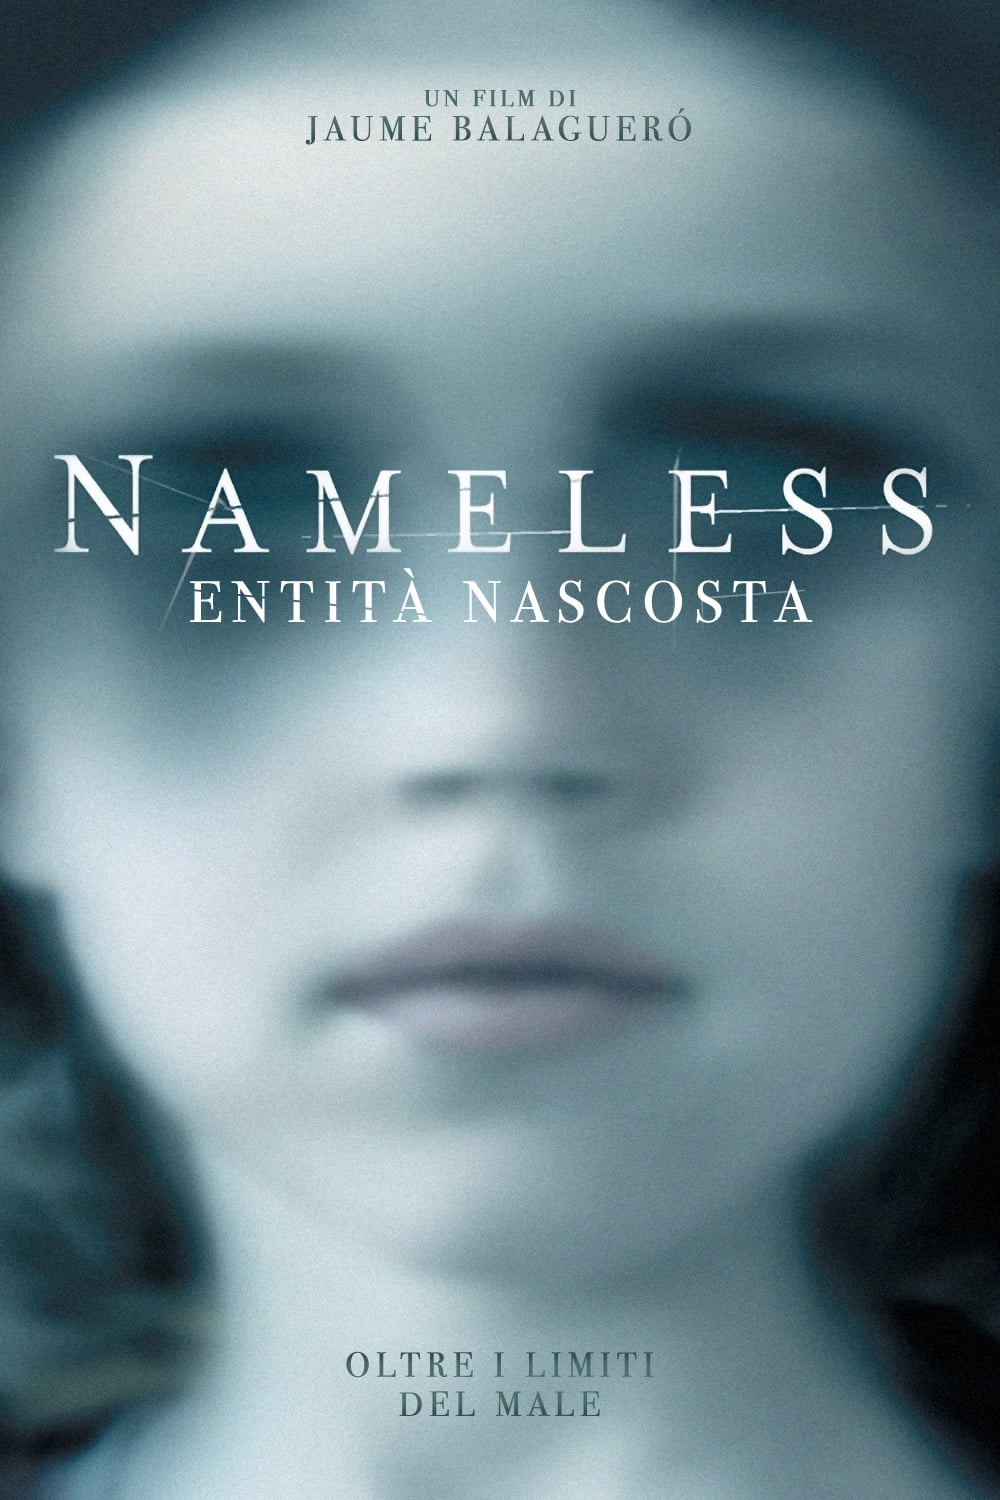 Nameless - Entità nascosta film